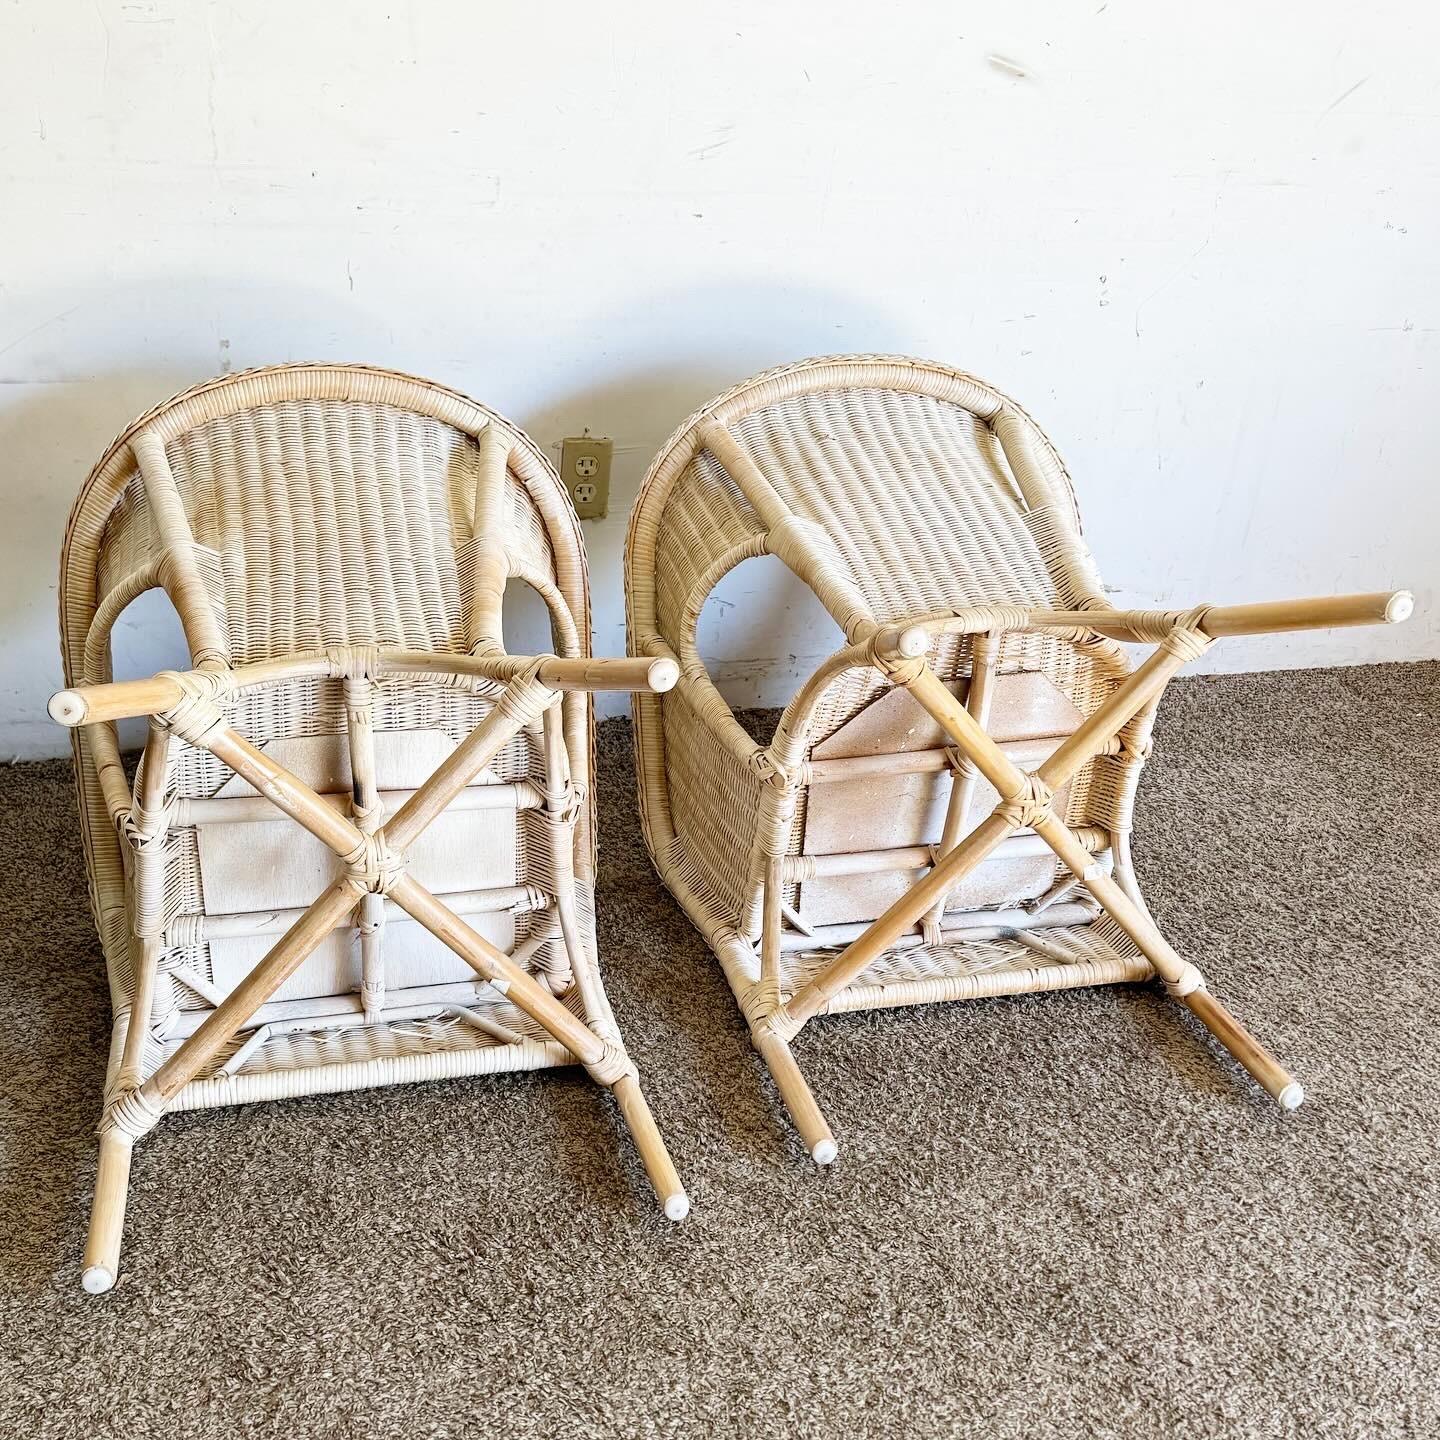 Verleihen Sie Ihrem Zuhause einen Hauch von böhmischer Eleganz mit diesem Paar Boho Chic Lounge Chairs aus weiß gewaschener Weide und Rattan. Diese Stühle, die sich perfekt für den Wintergarten oder die Terrasse eignen, vereinen rustikalen Charme